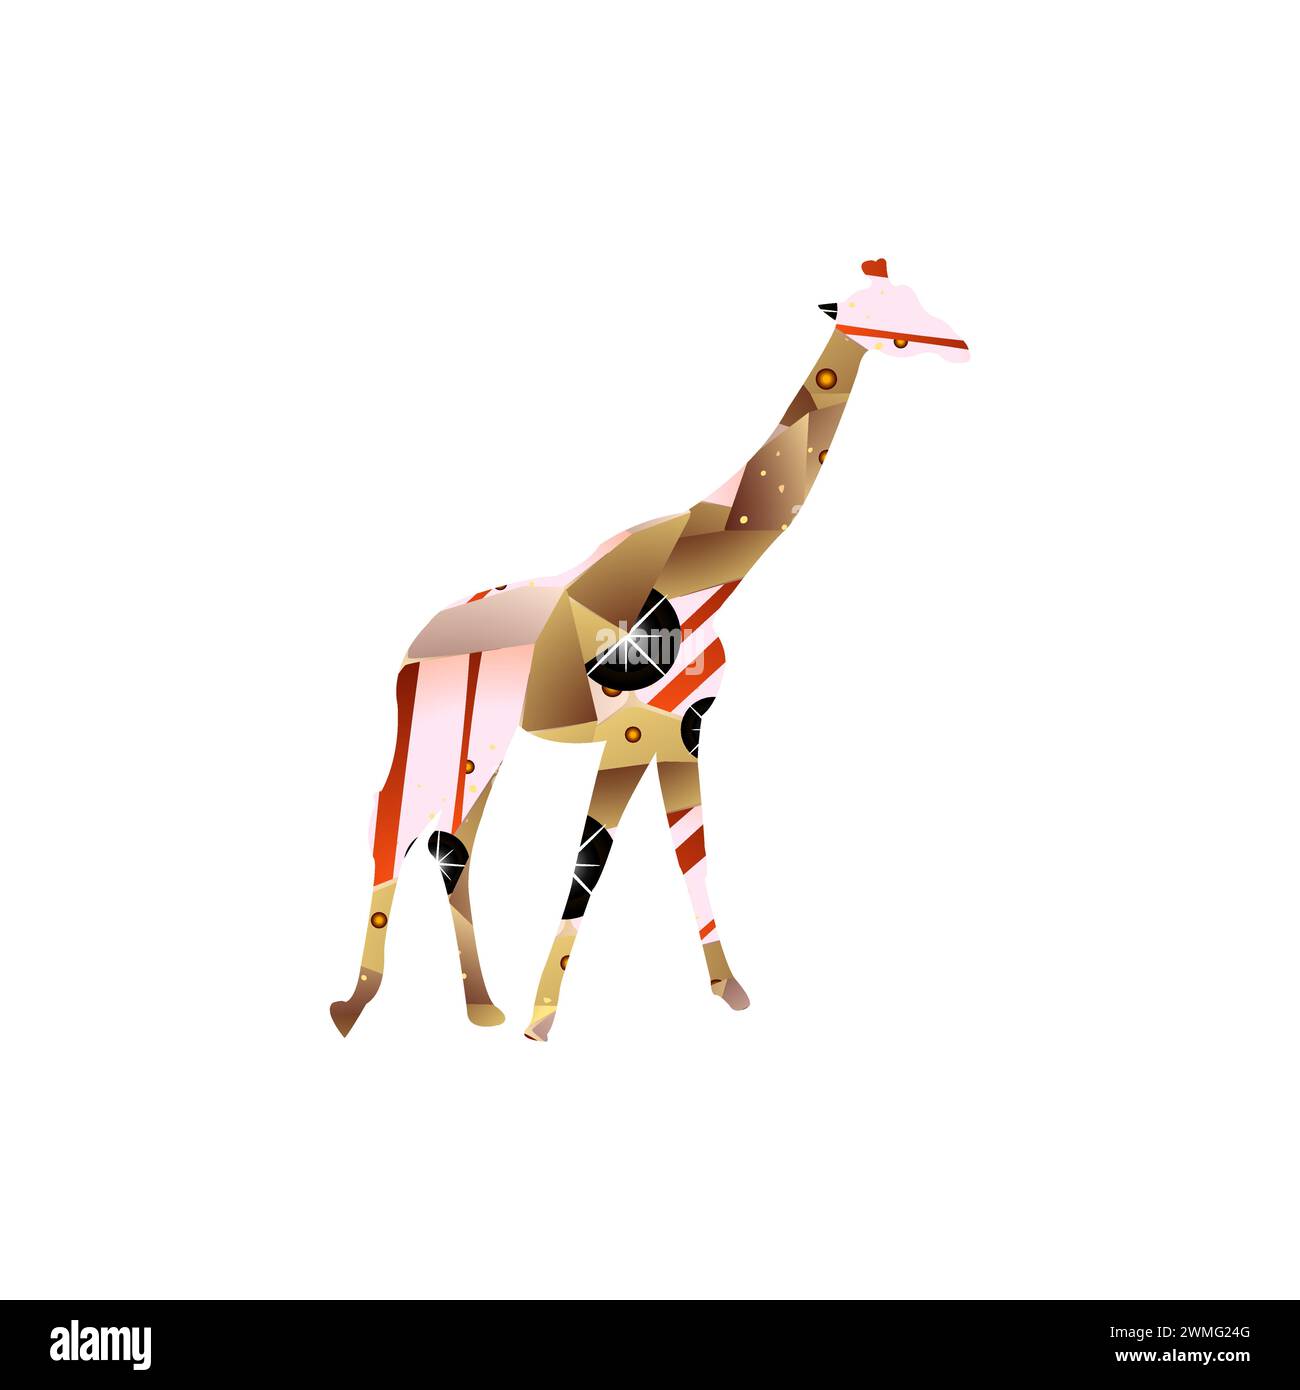 art illustration design concept of background giraffe Stock Vector